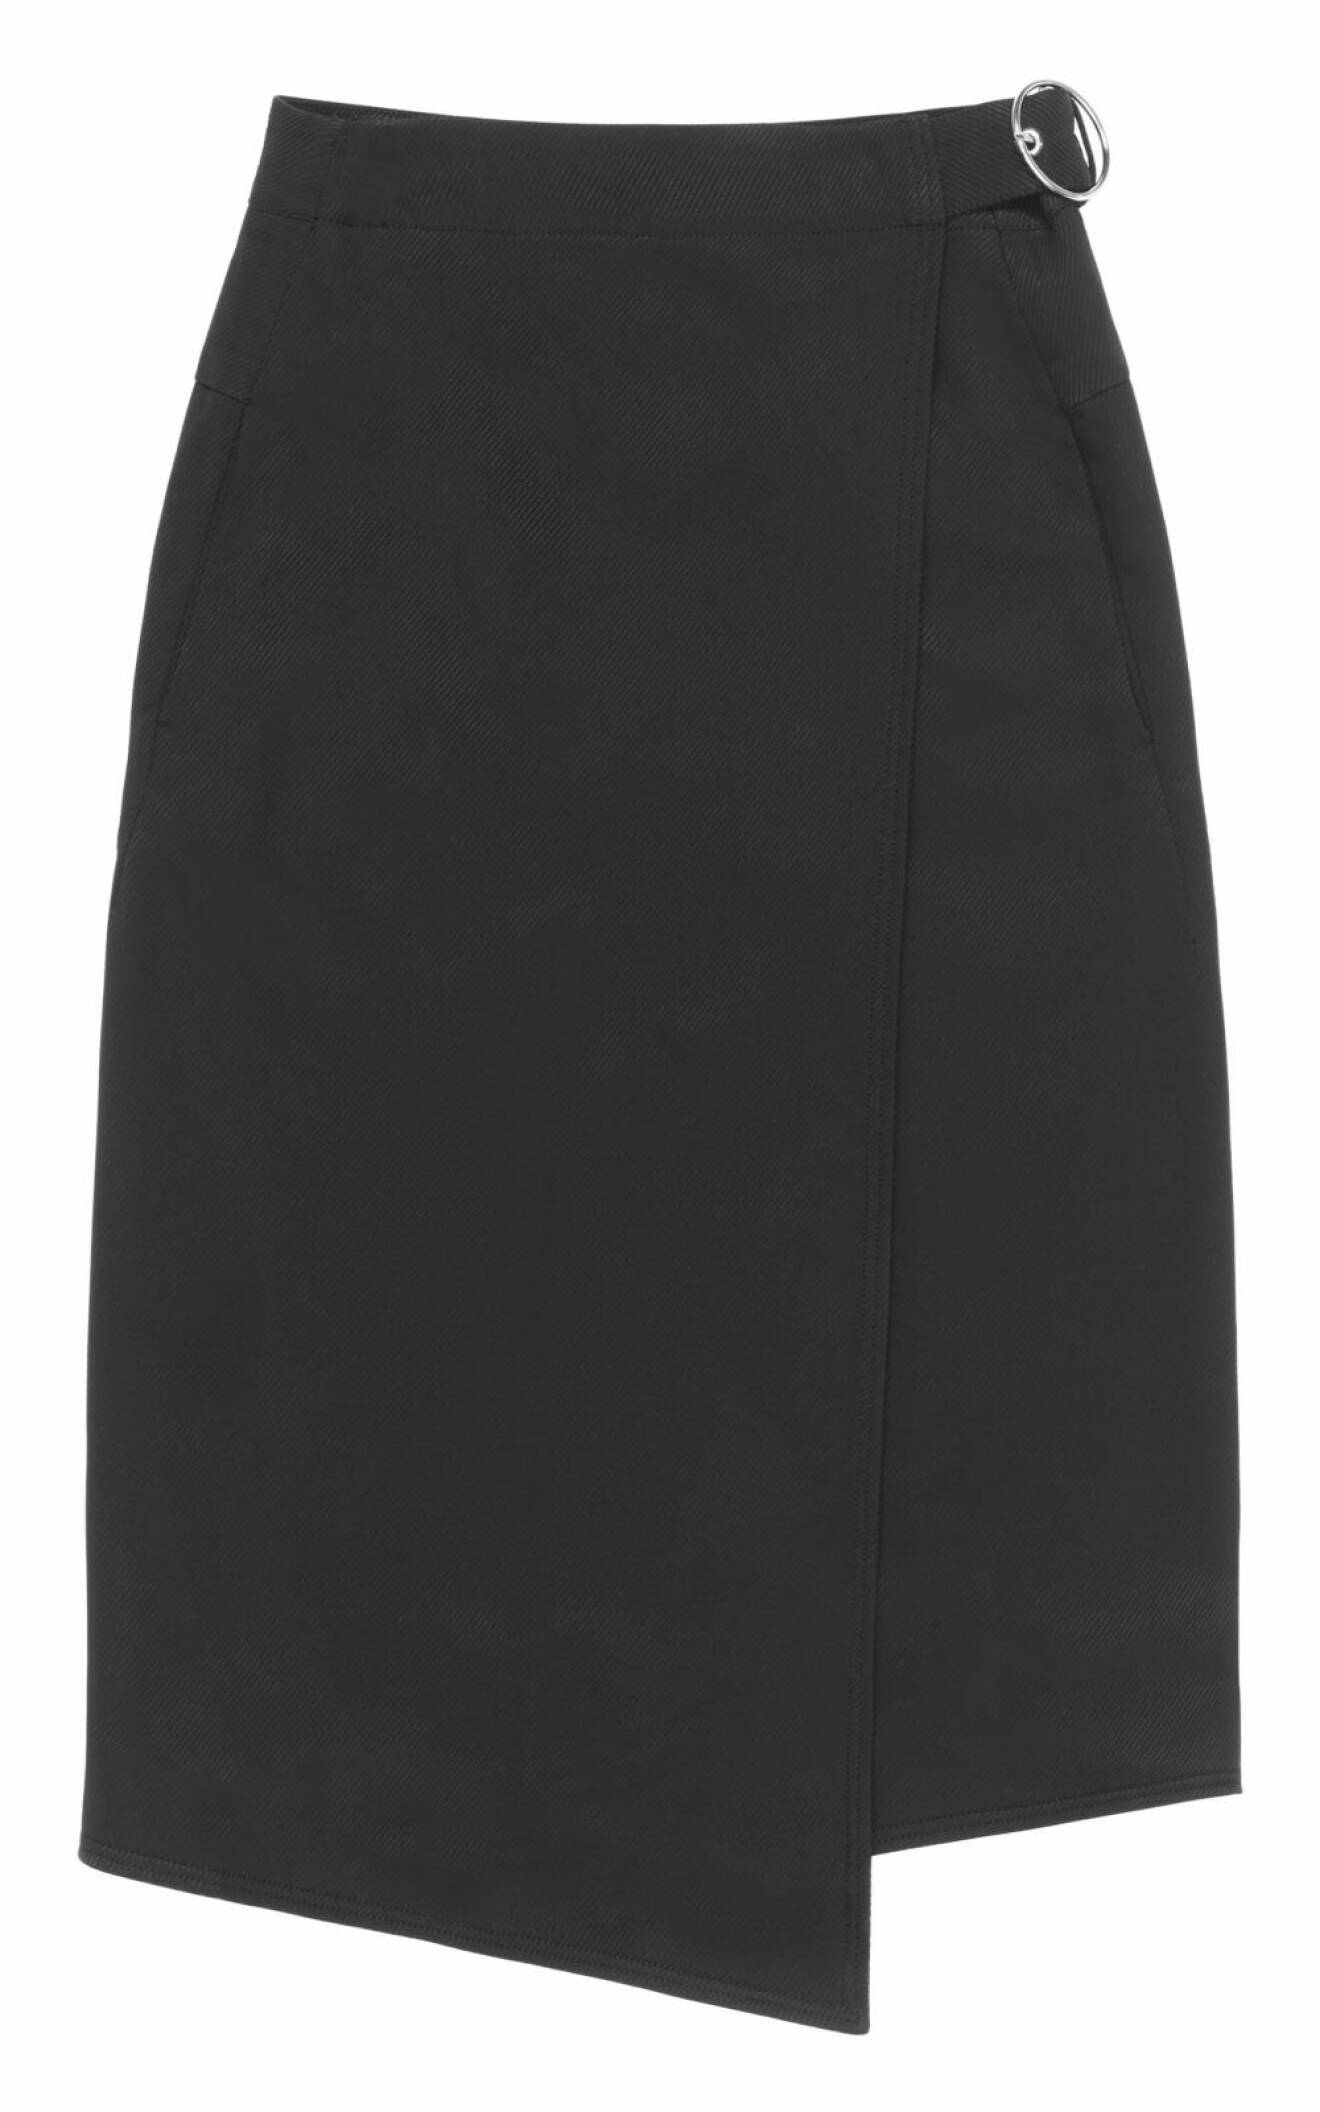 Svart kjol från H&M. 